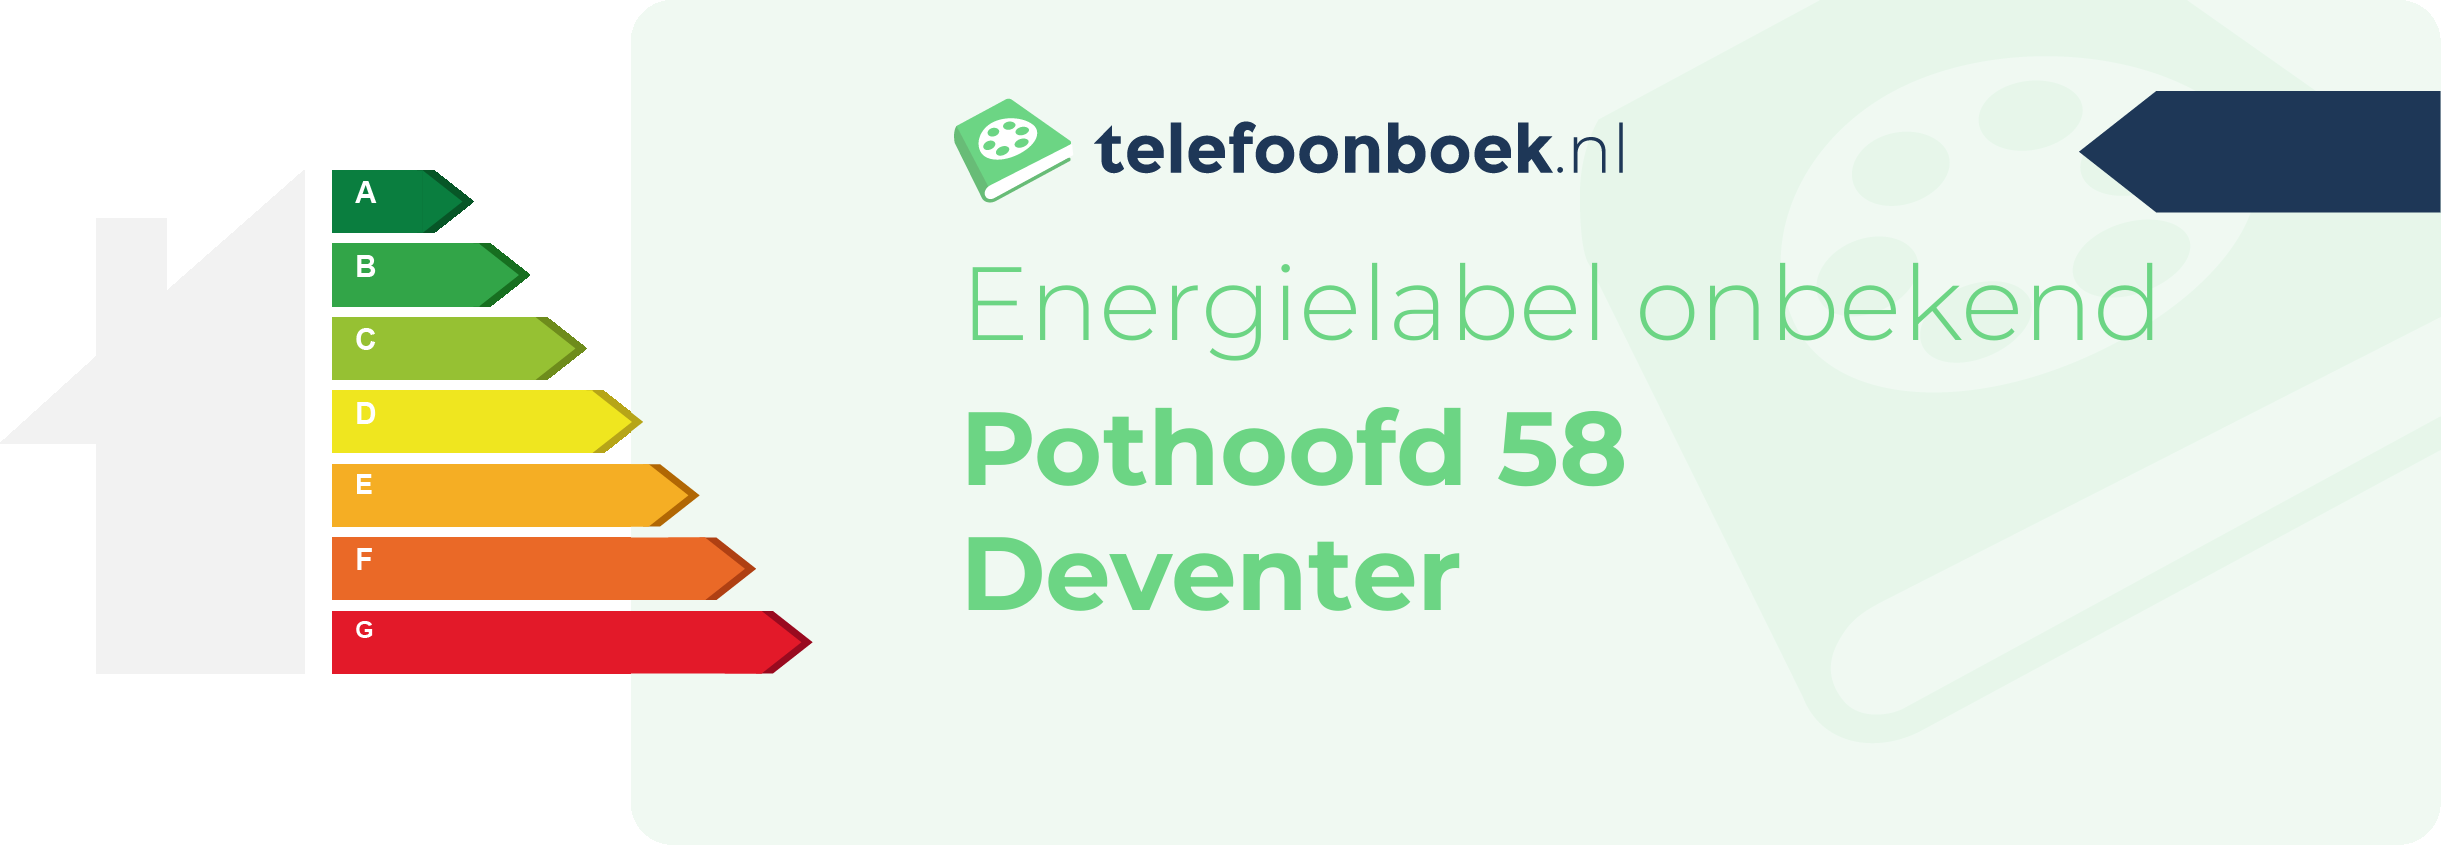 Energielabel Pothoofd 58 Deventer